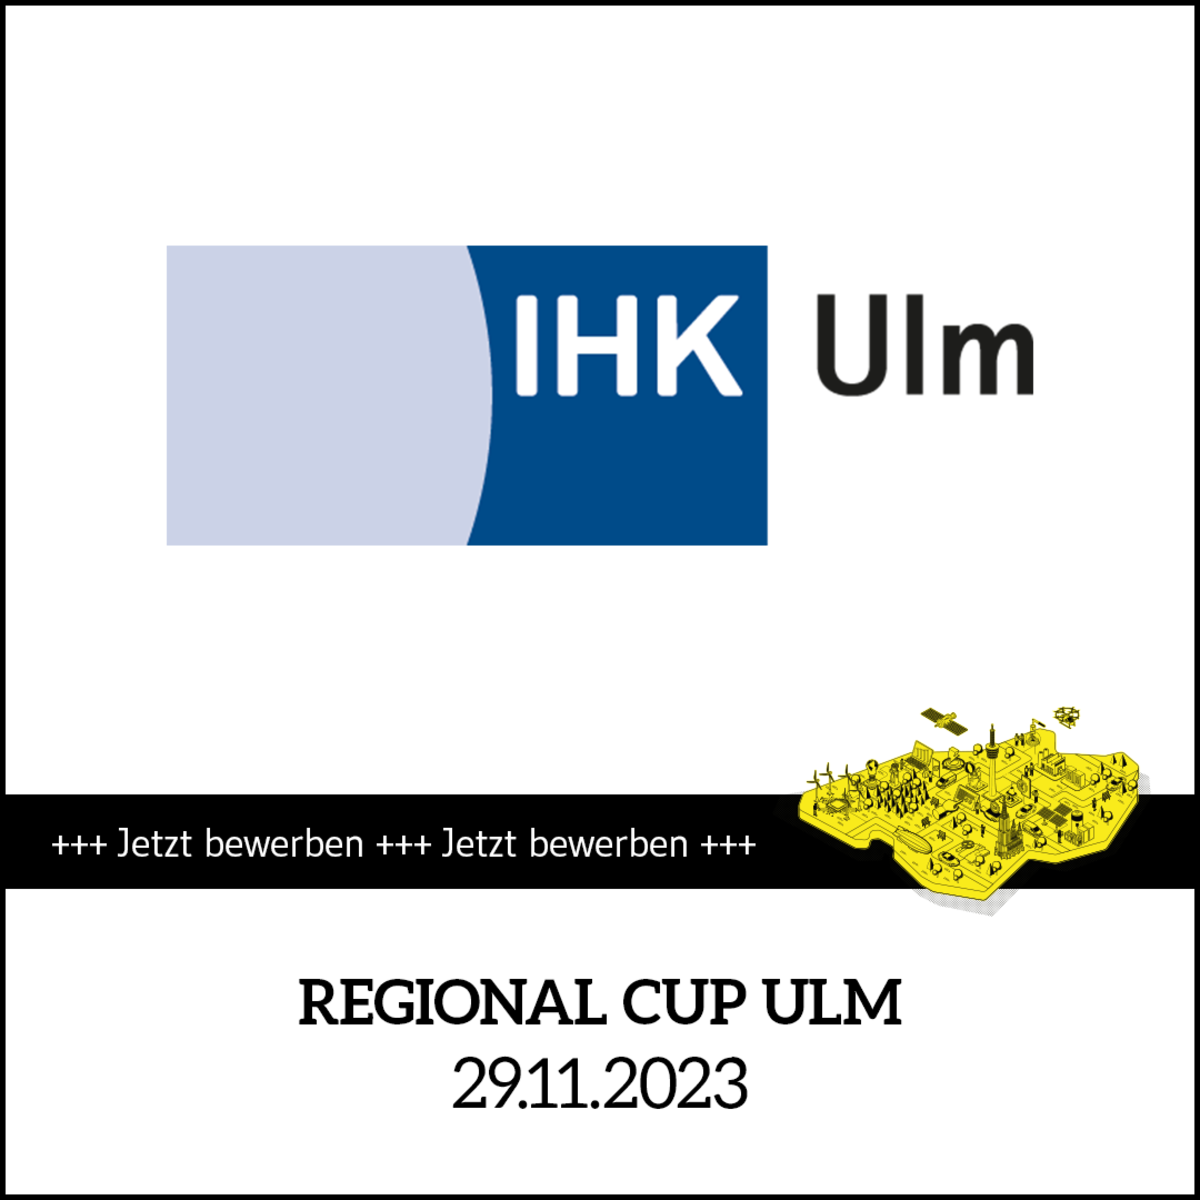 Termin Kachel Start-up BW Elevator Pitch 2024: Regional Cup Ulm am 29.11.2023. Text: Jetzt bewerben für den Regional Cup Ulm am 29.11.2023.